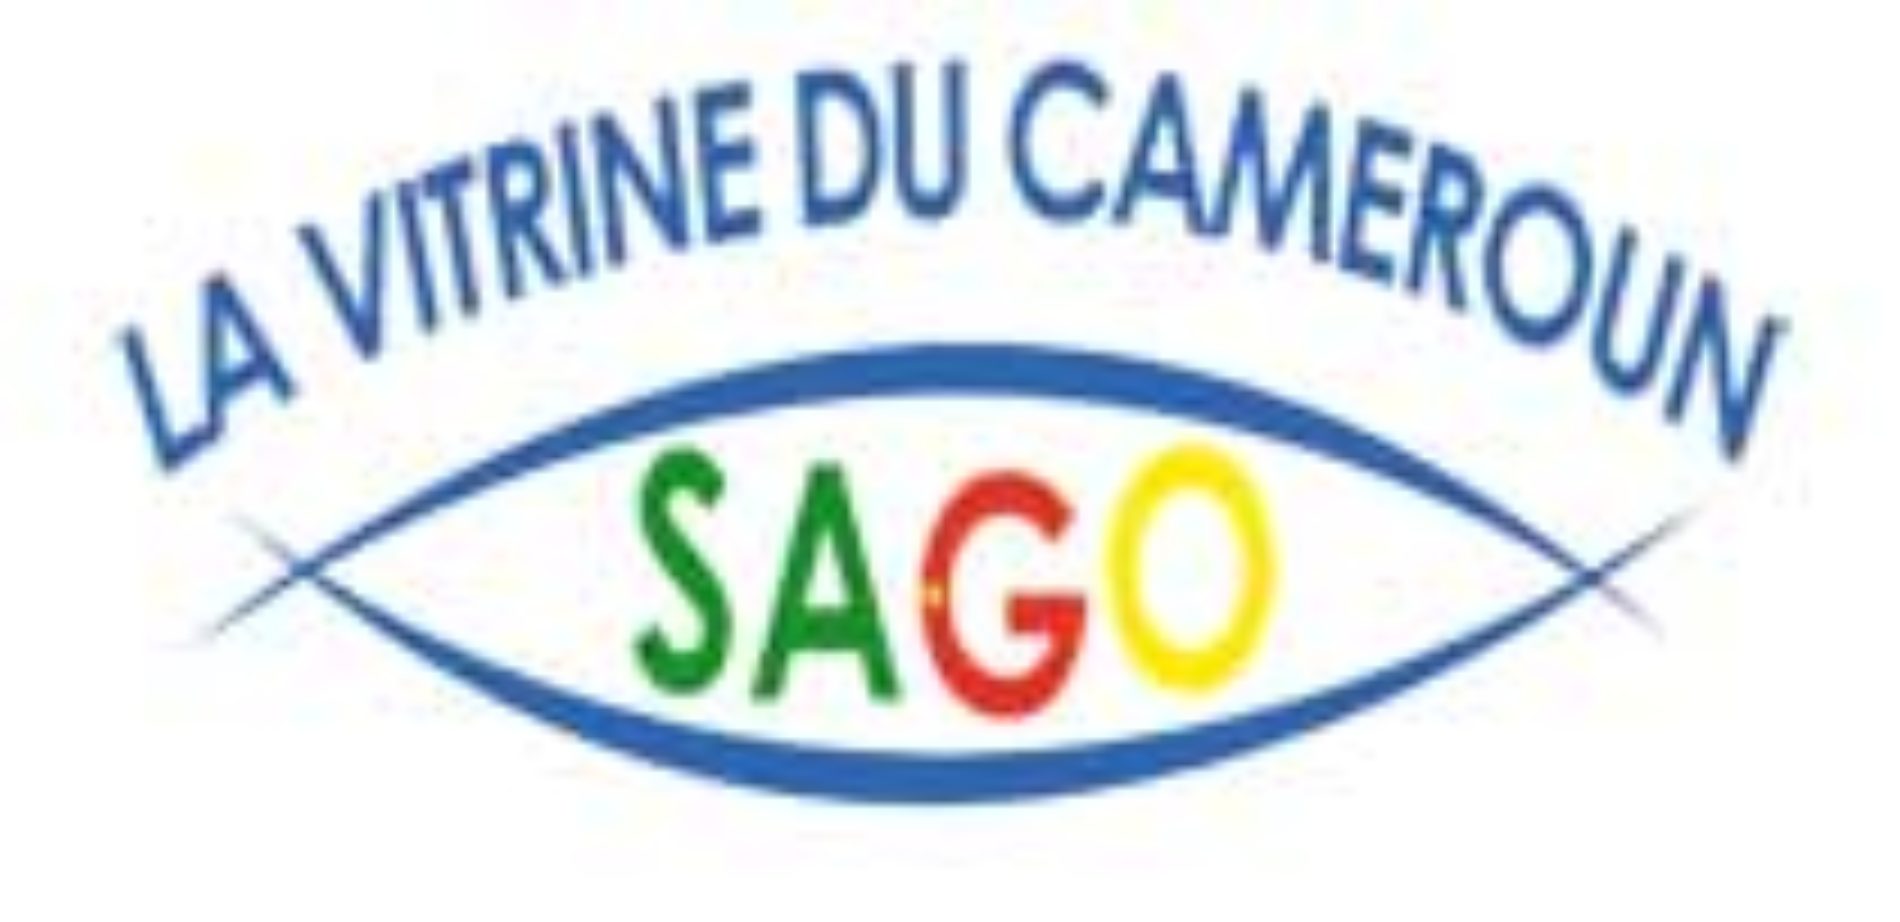 Forum des collectivités locales du Cameroun